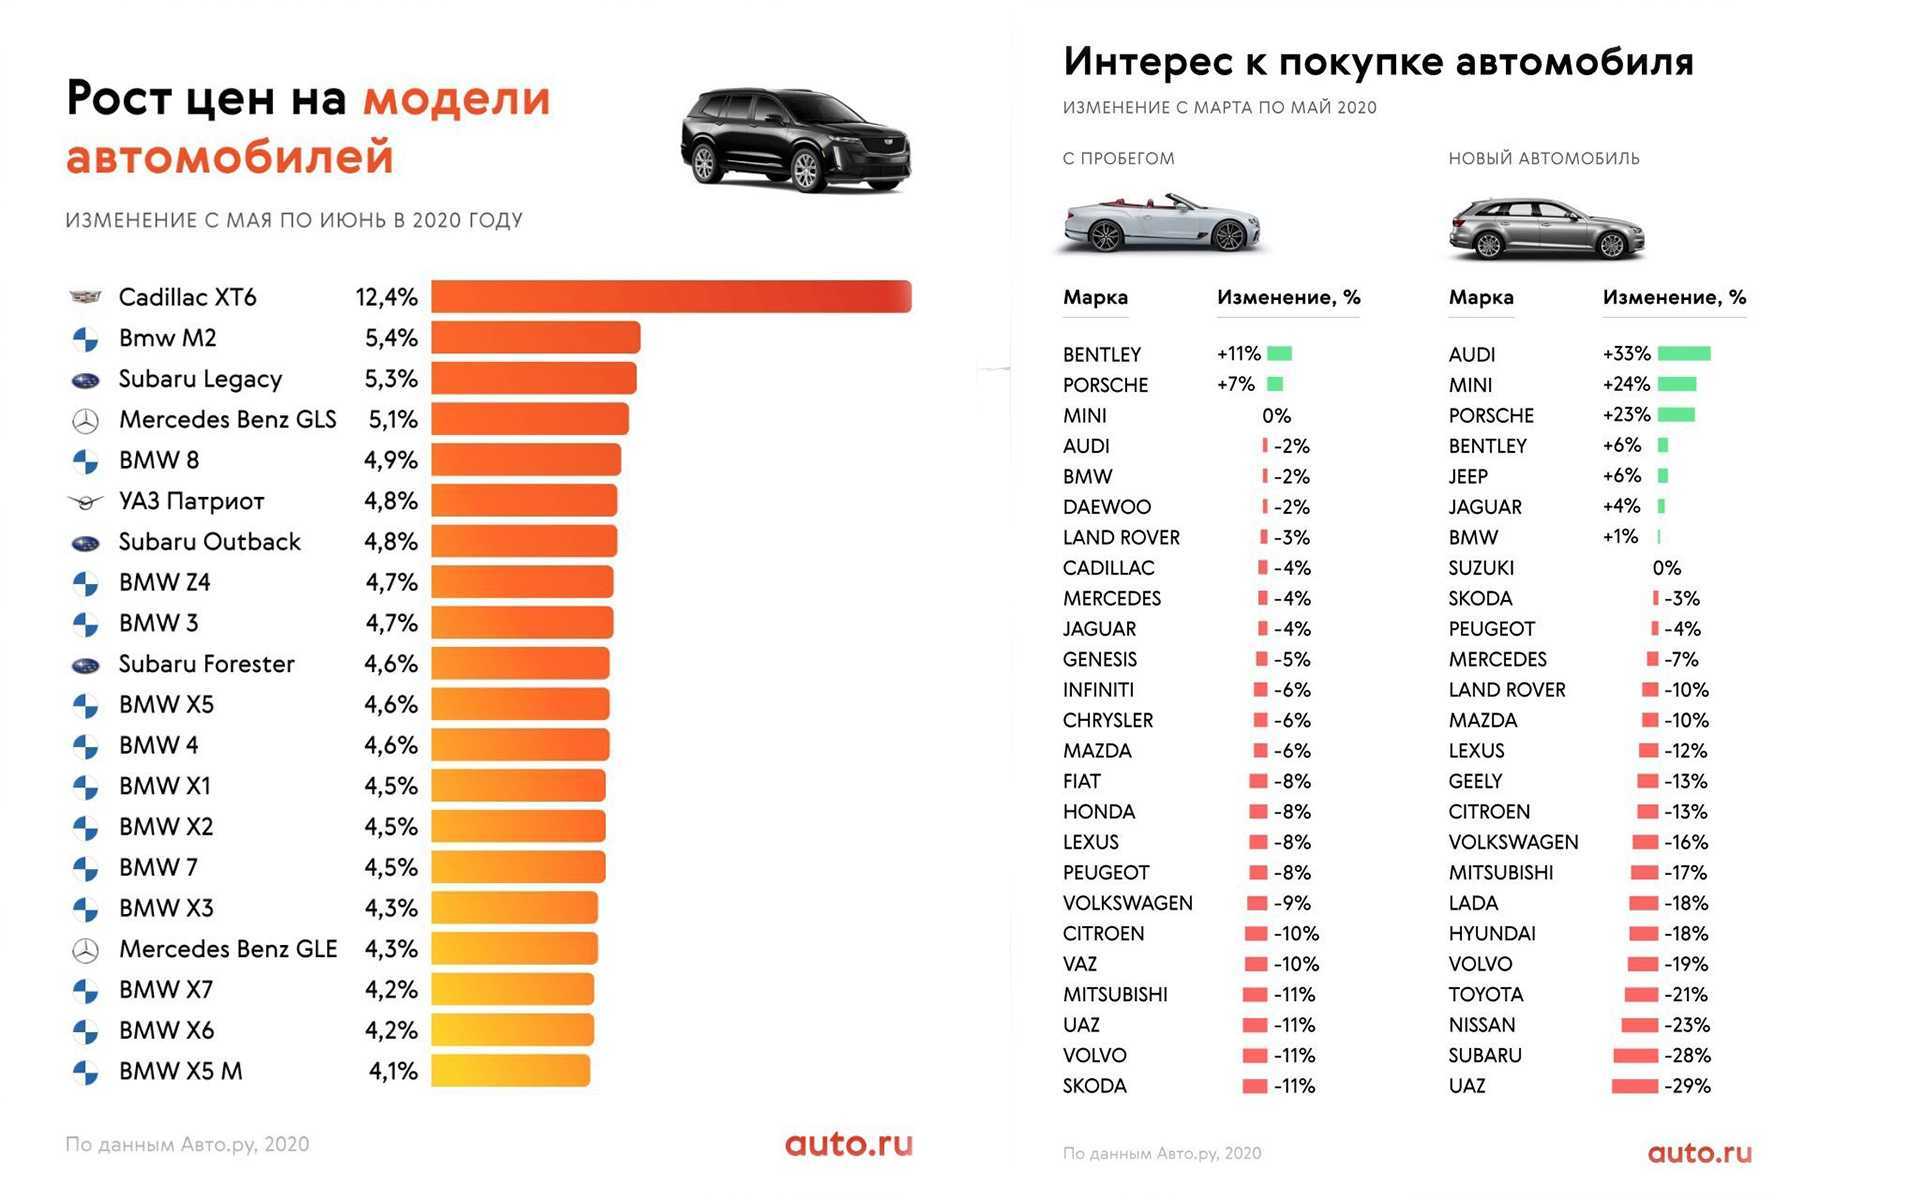 Самые ненадежные автомобили 2019 года в россии